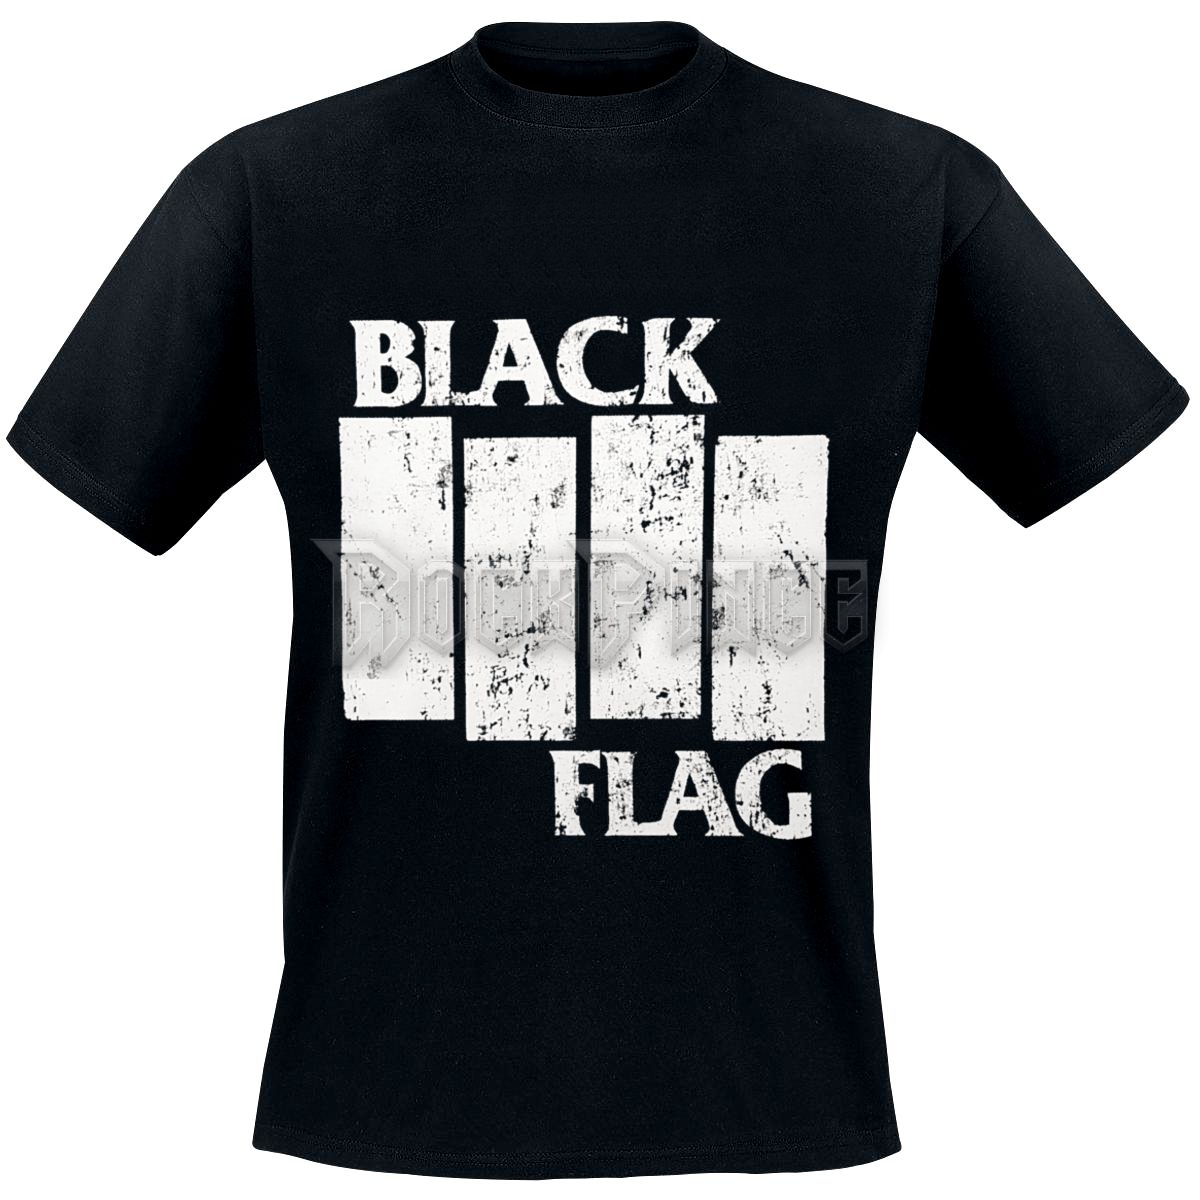 BLACK FLAG - LOGO - UNISEX PÓLÓ